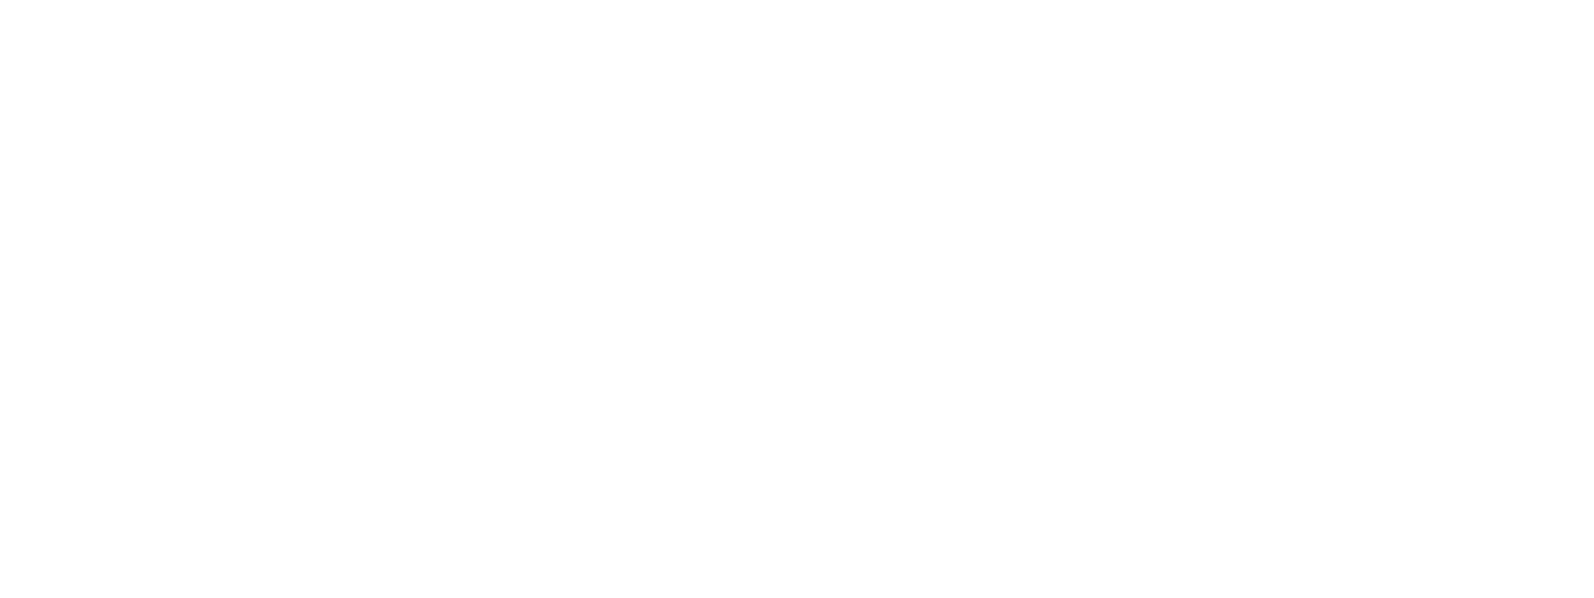 Destination XL logo for dark backgrounds (transparent PNG)